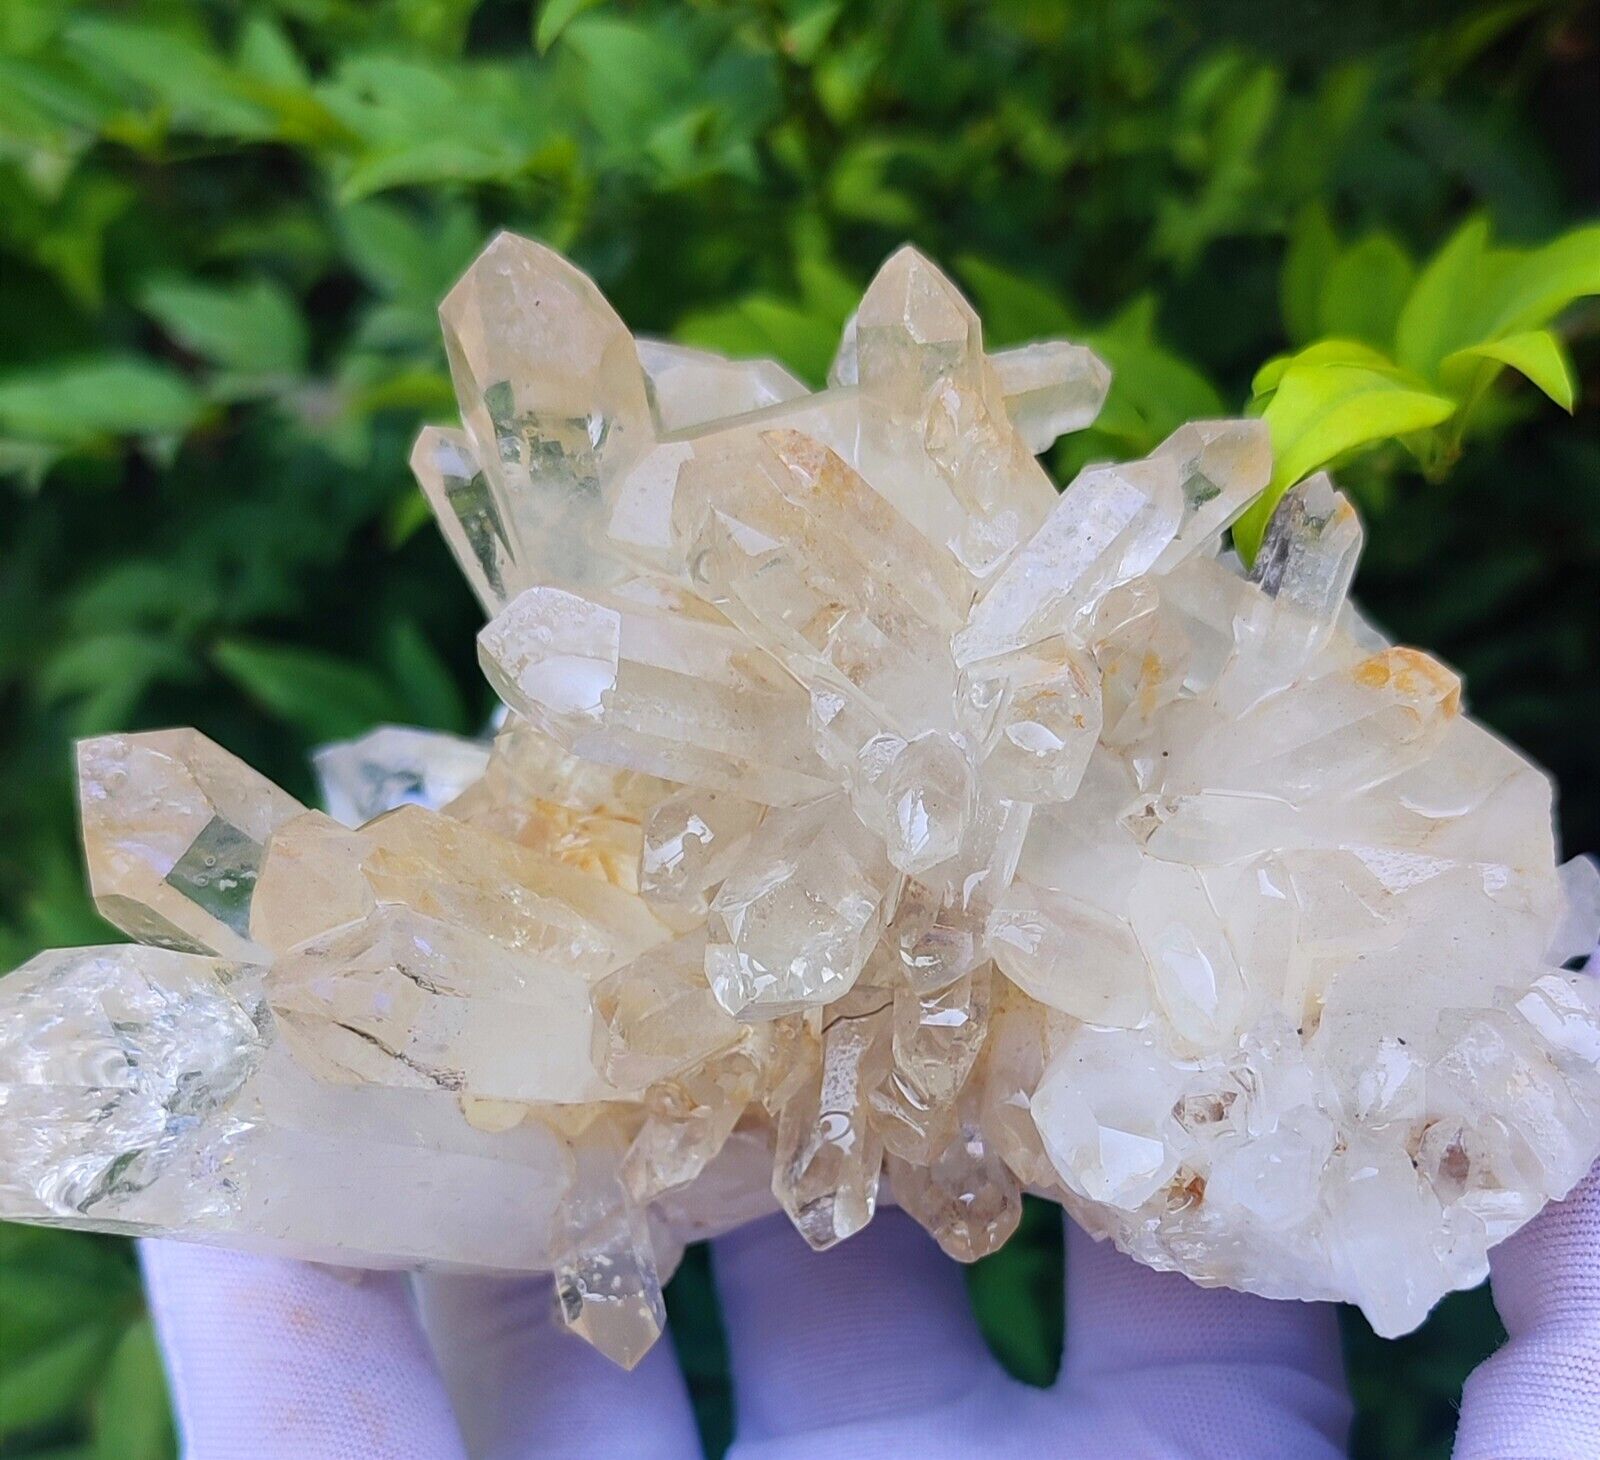 Exceptional Clear Quartz Crystal Specimen Baluchistan Pakistan